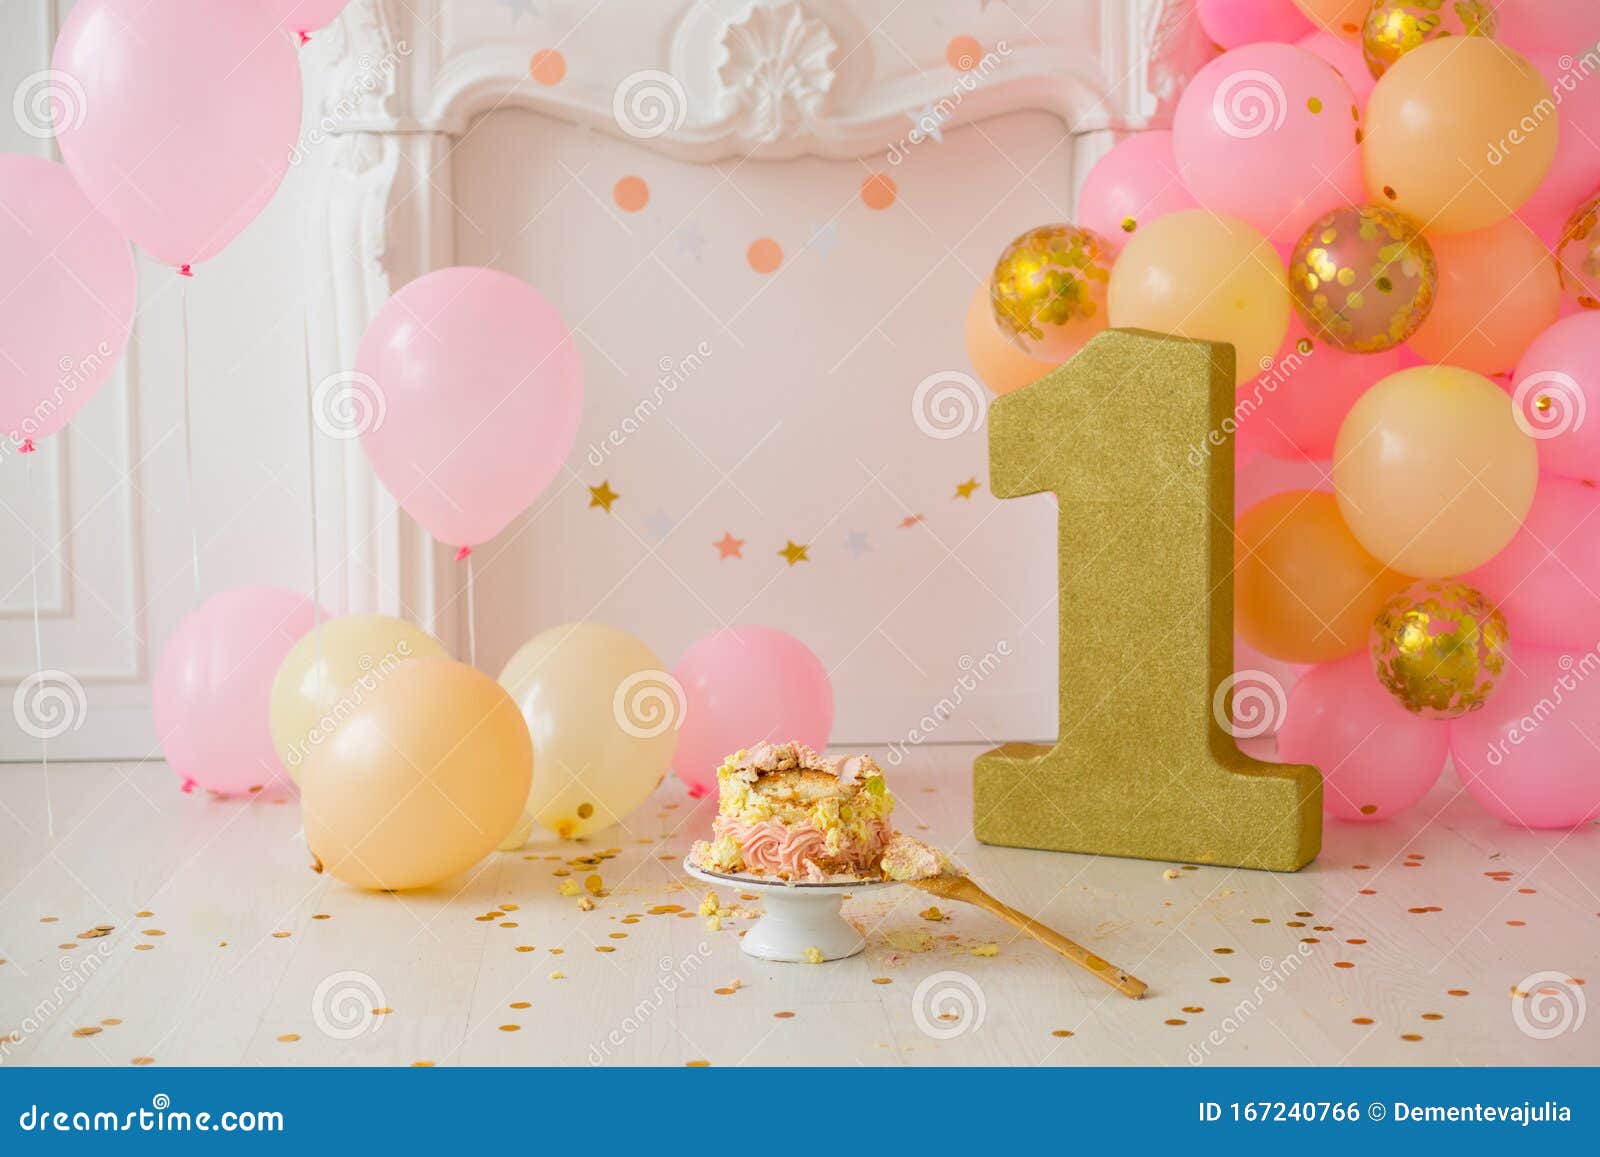 Hãy cùng chiêm ngưỡng hình ảnh sinh nhật đầu tiên với Smash Cake đầy ngộ nghĩnh, đáng yêu của bé yêu nhà mình. Với chiếc bánh nhỏ xinh được trang trí hoa quả, bé chắc chắn sẽ rất thích thú khi được đắm chìm trong không gian kỷ niệm tuyệt vời này.